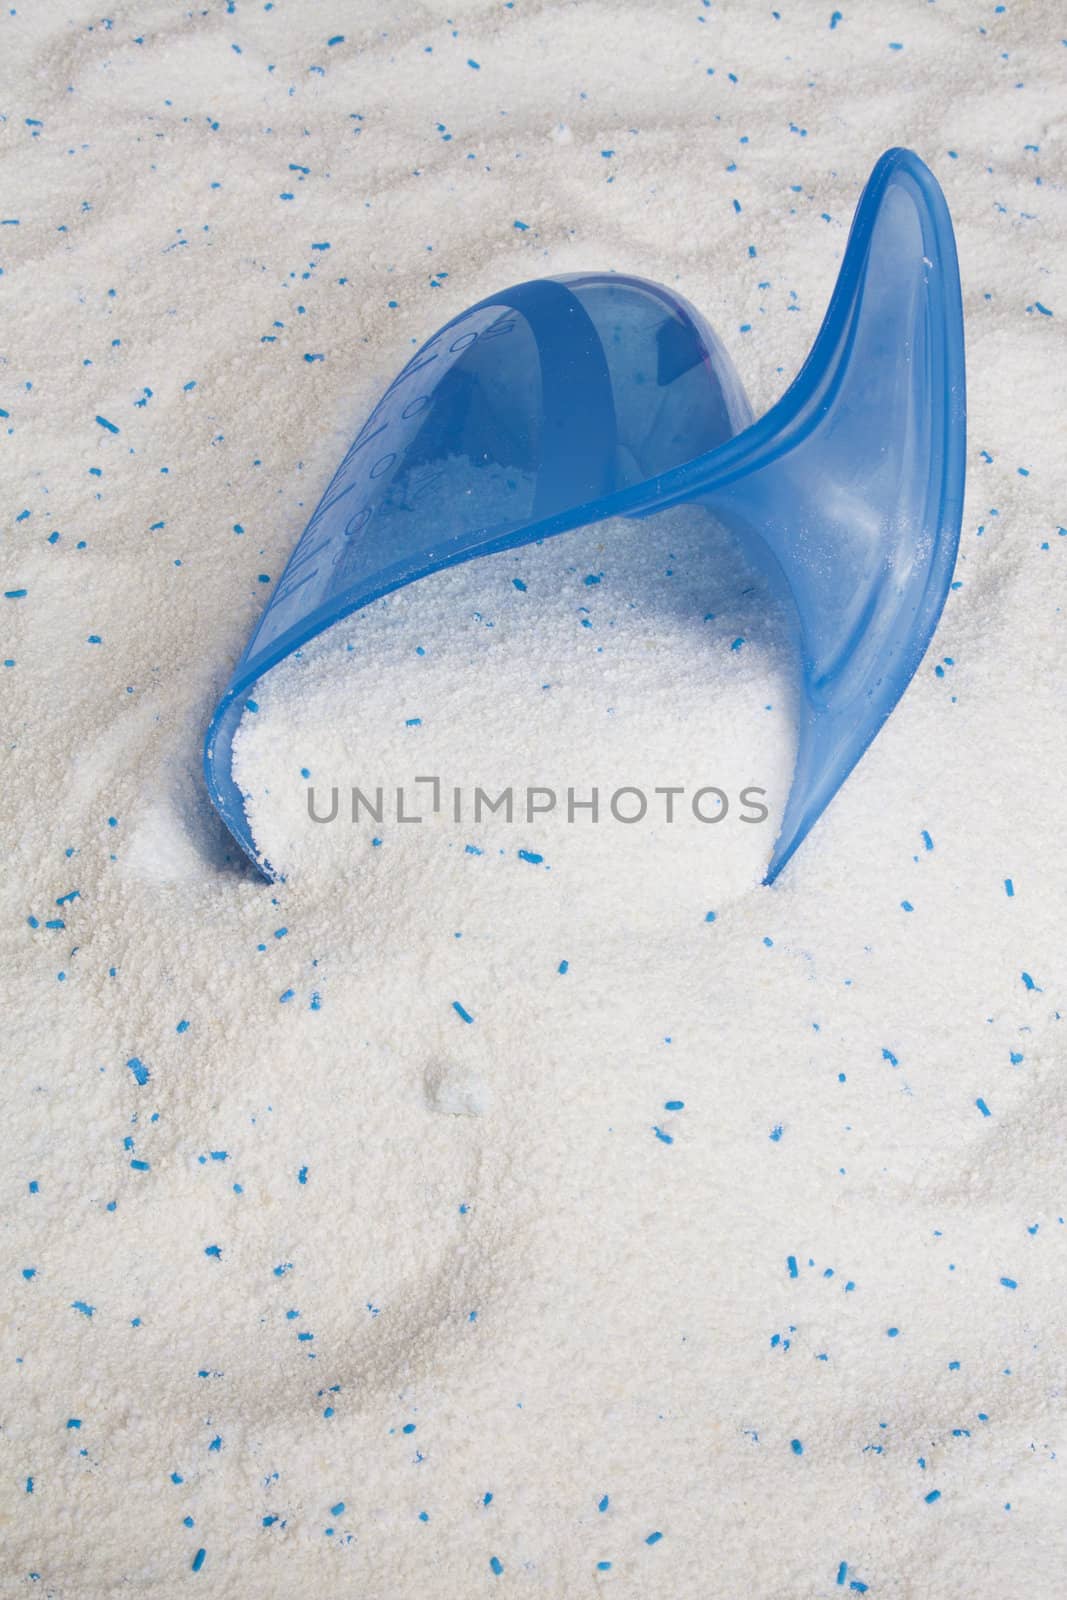 Washing Powder and Blue Scoop by Brigida_Soriano